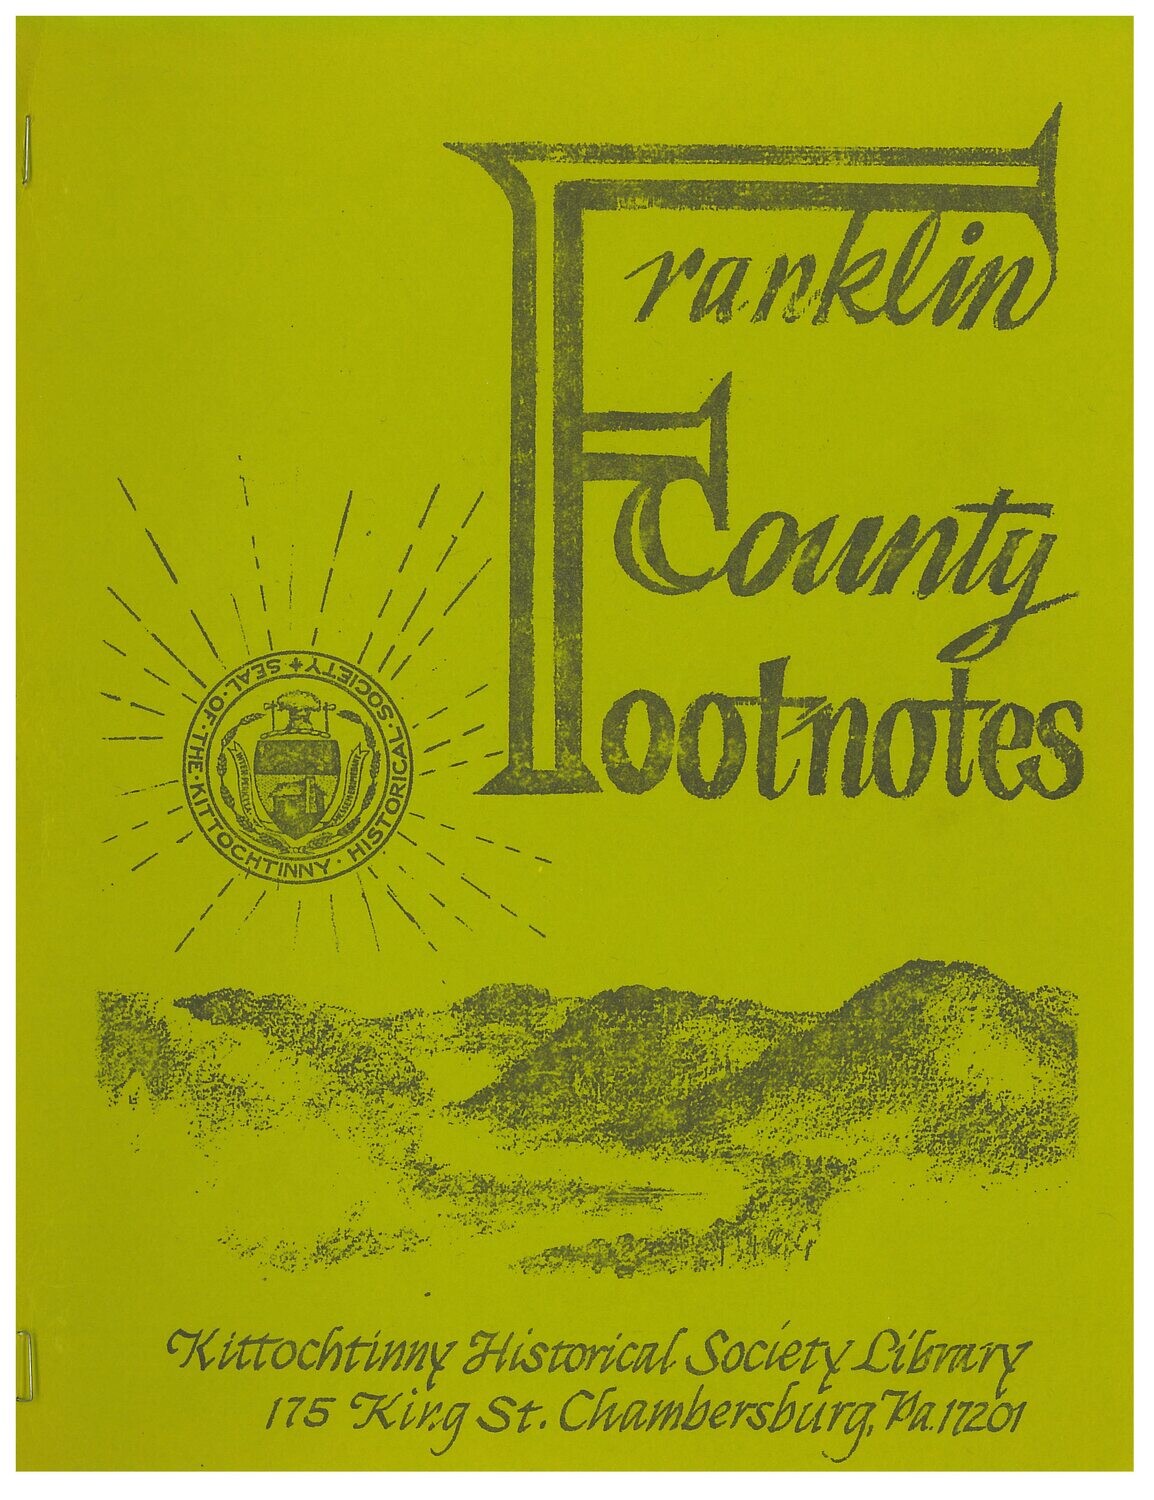 Franklin County Footnotes 1982 Vol. 3 No. 1